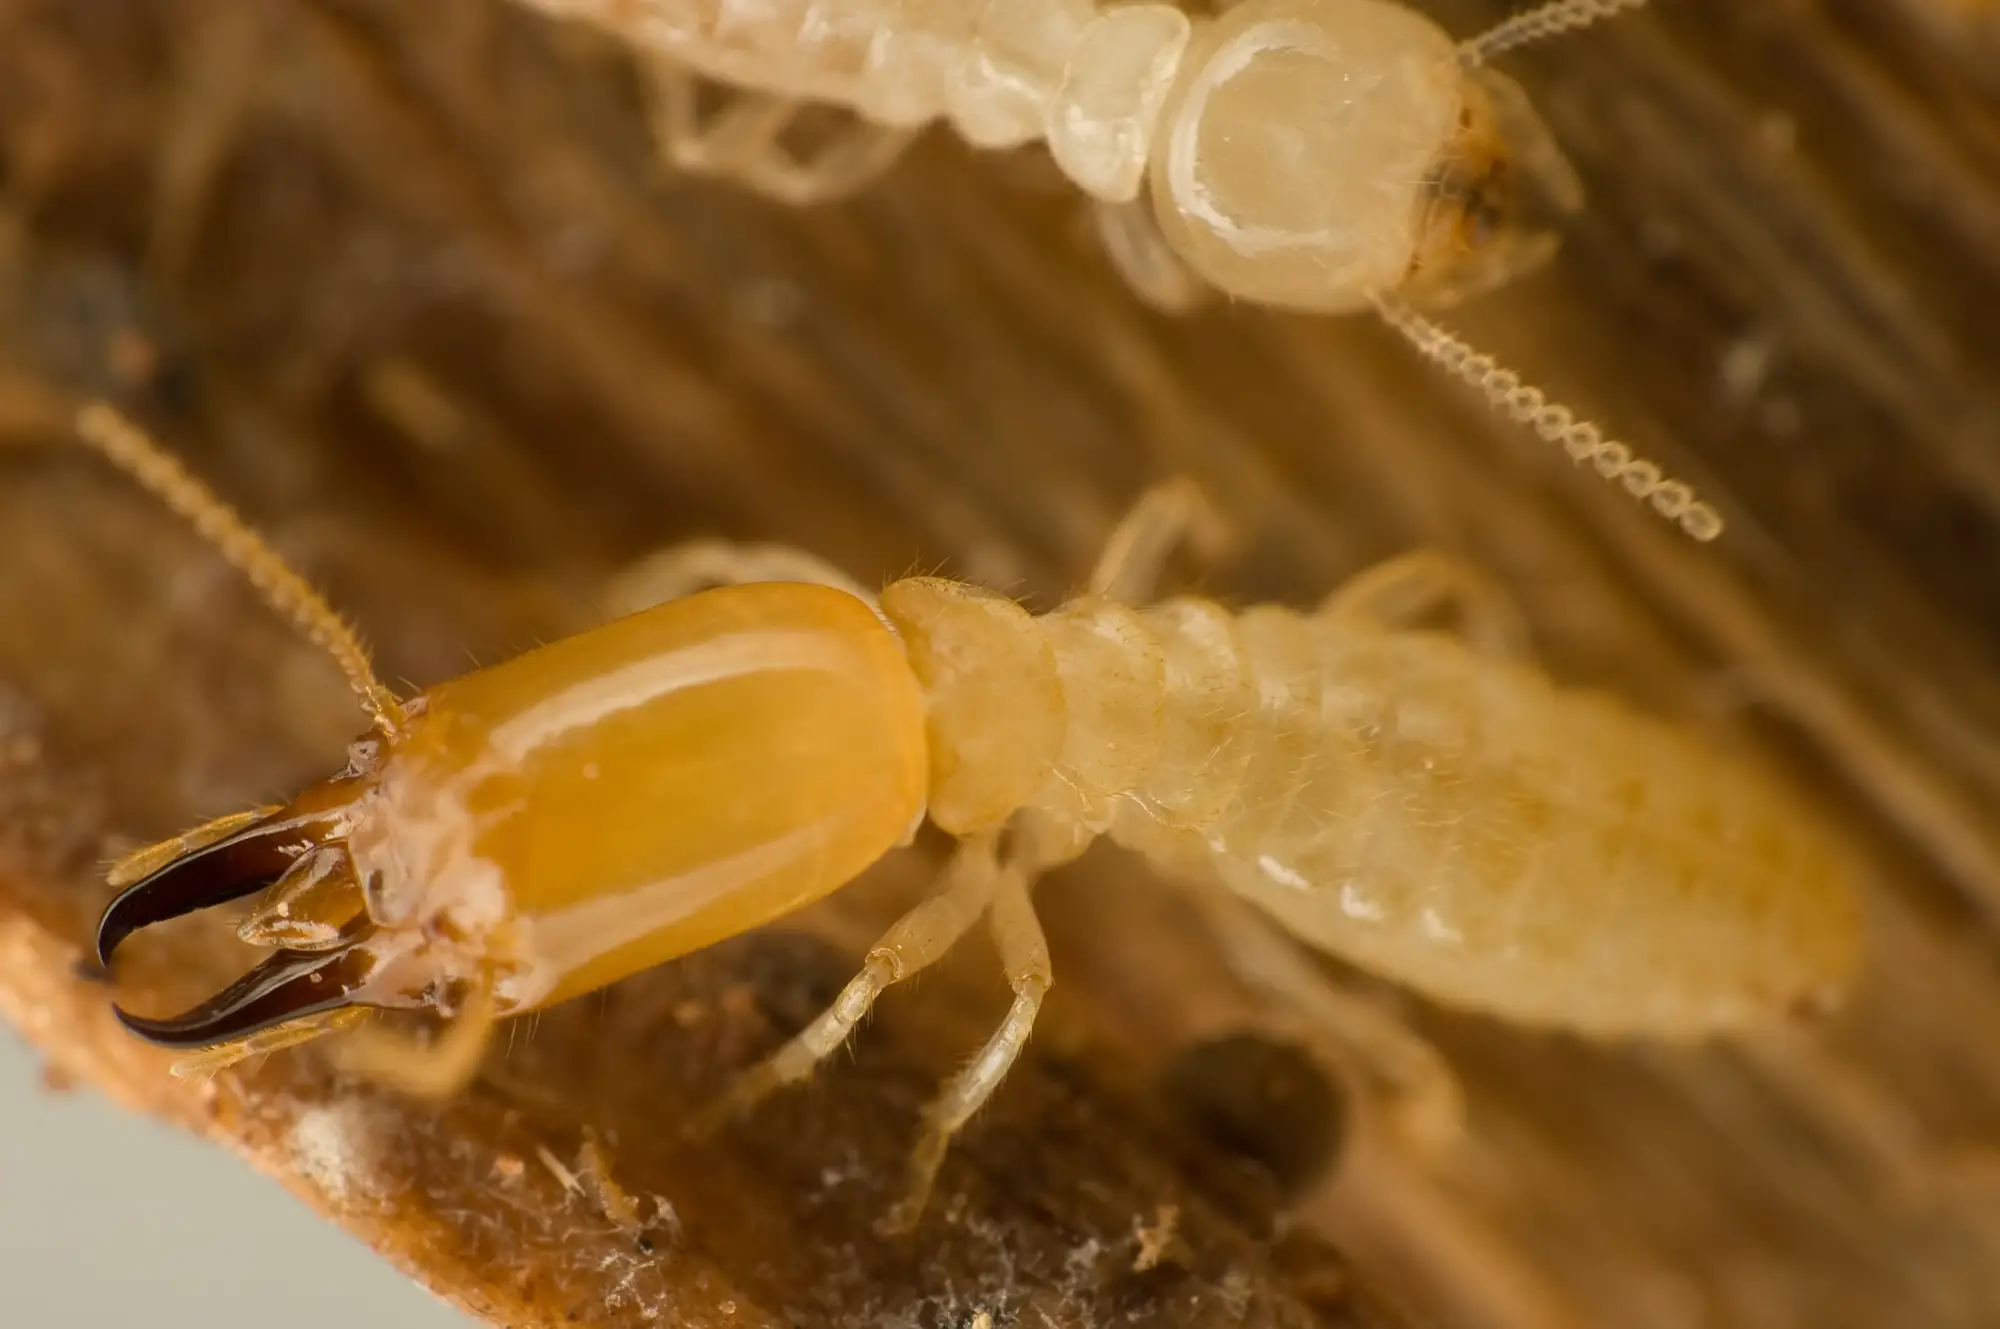 Image of subterranean termites